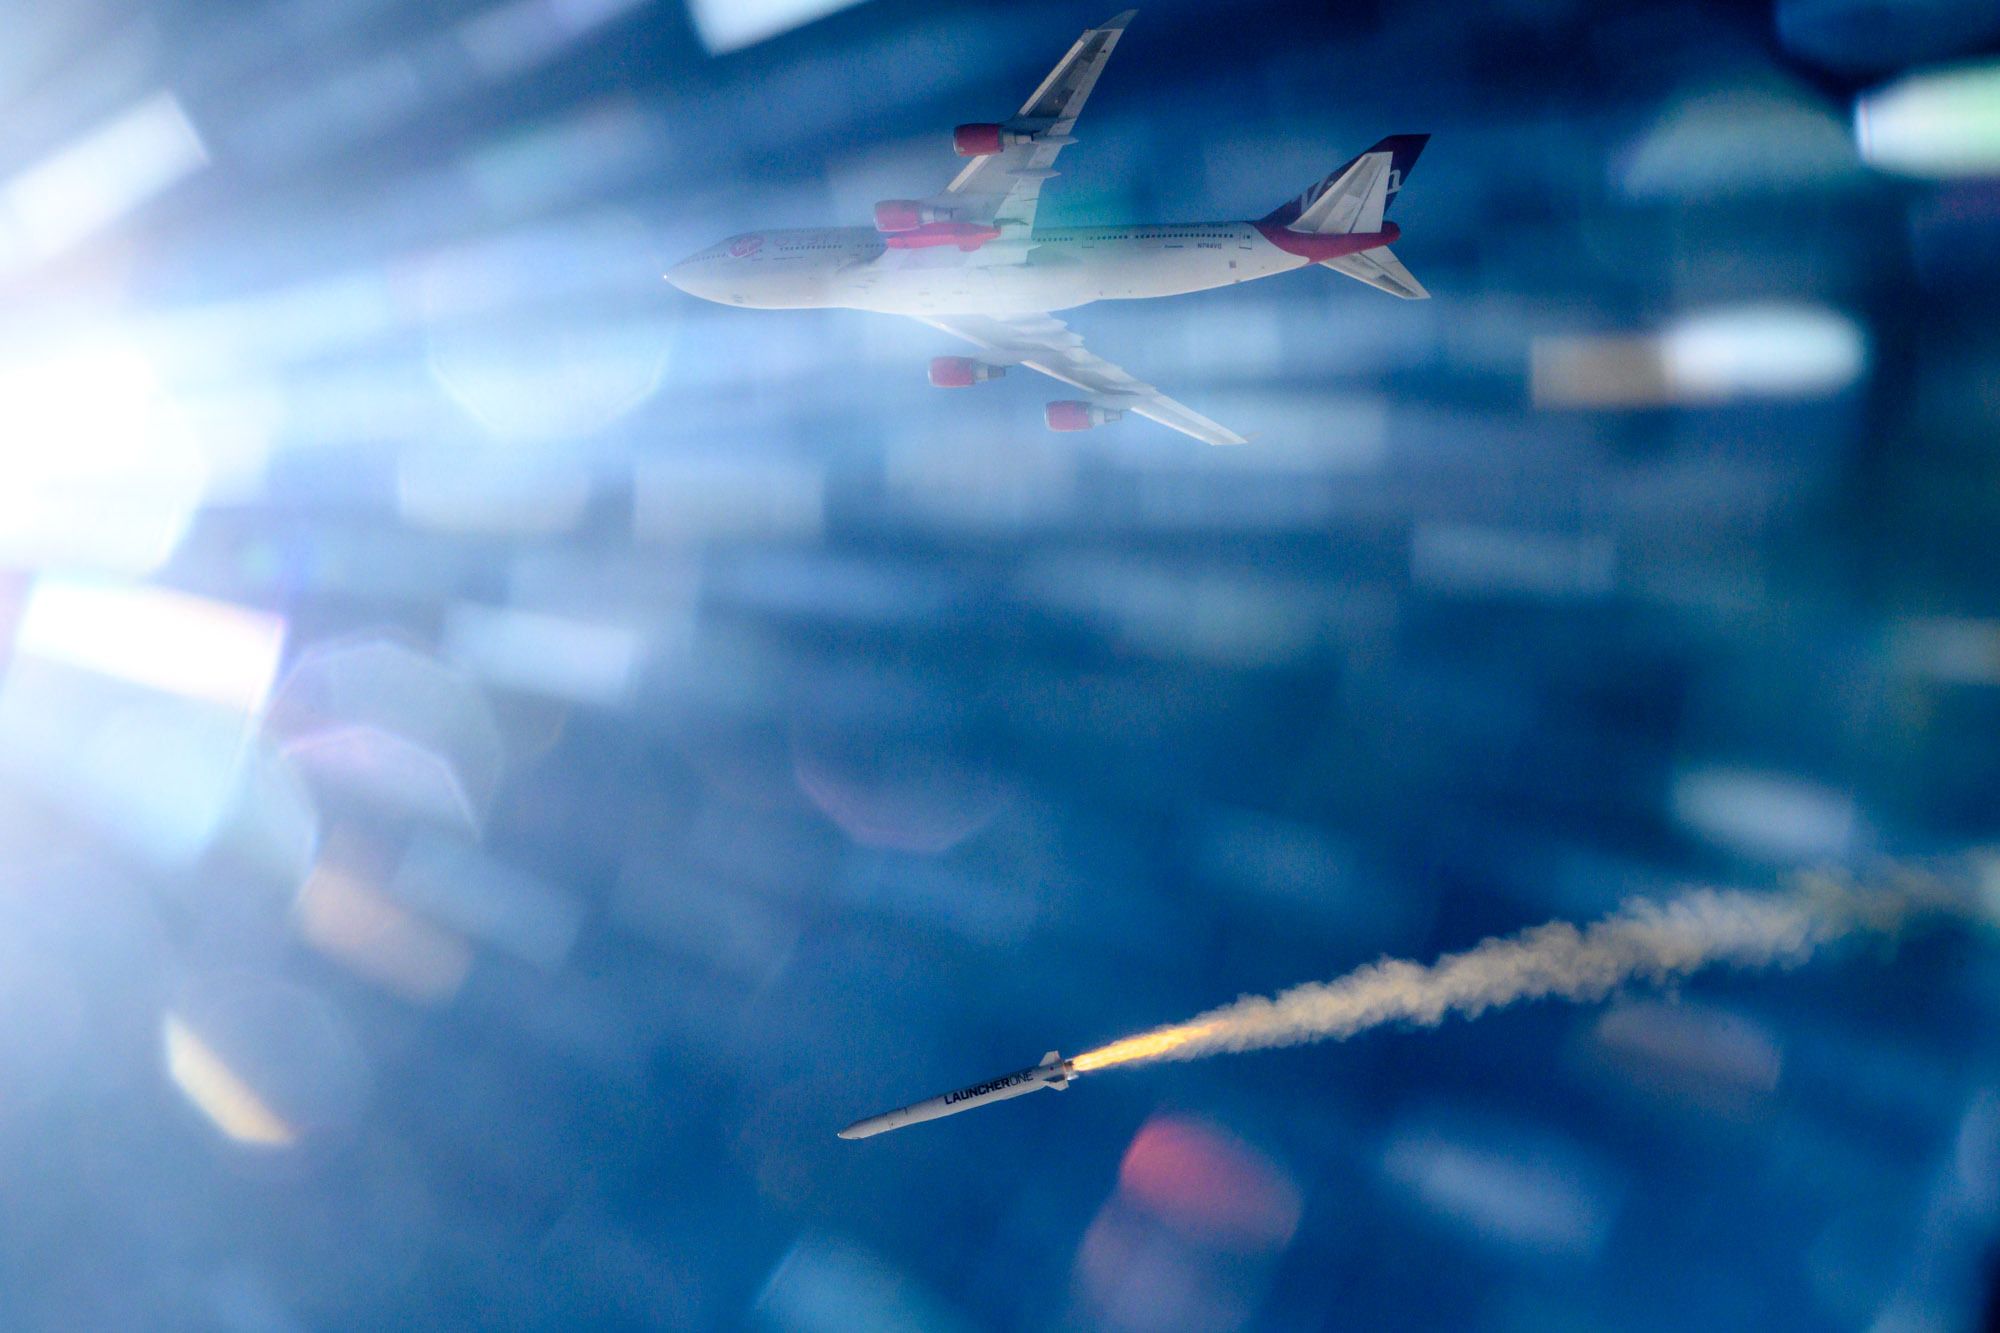 Virgin Orbit 747 launch vehicle with rocket